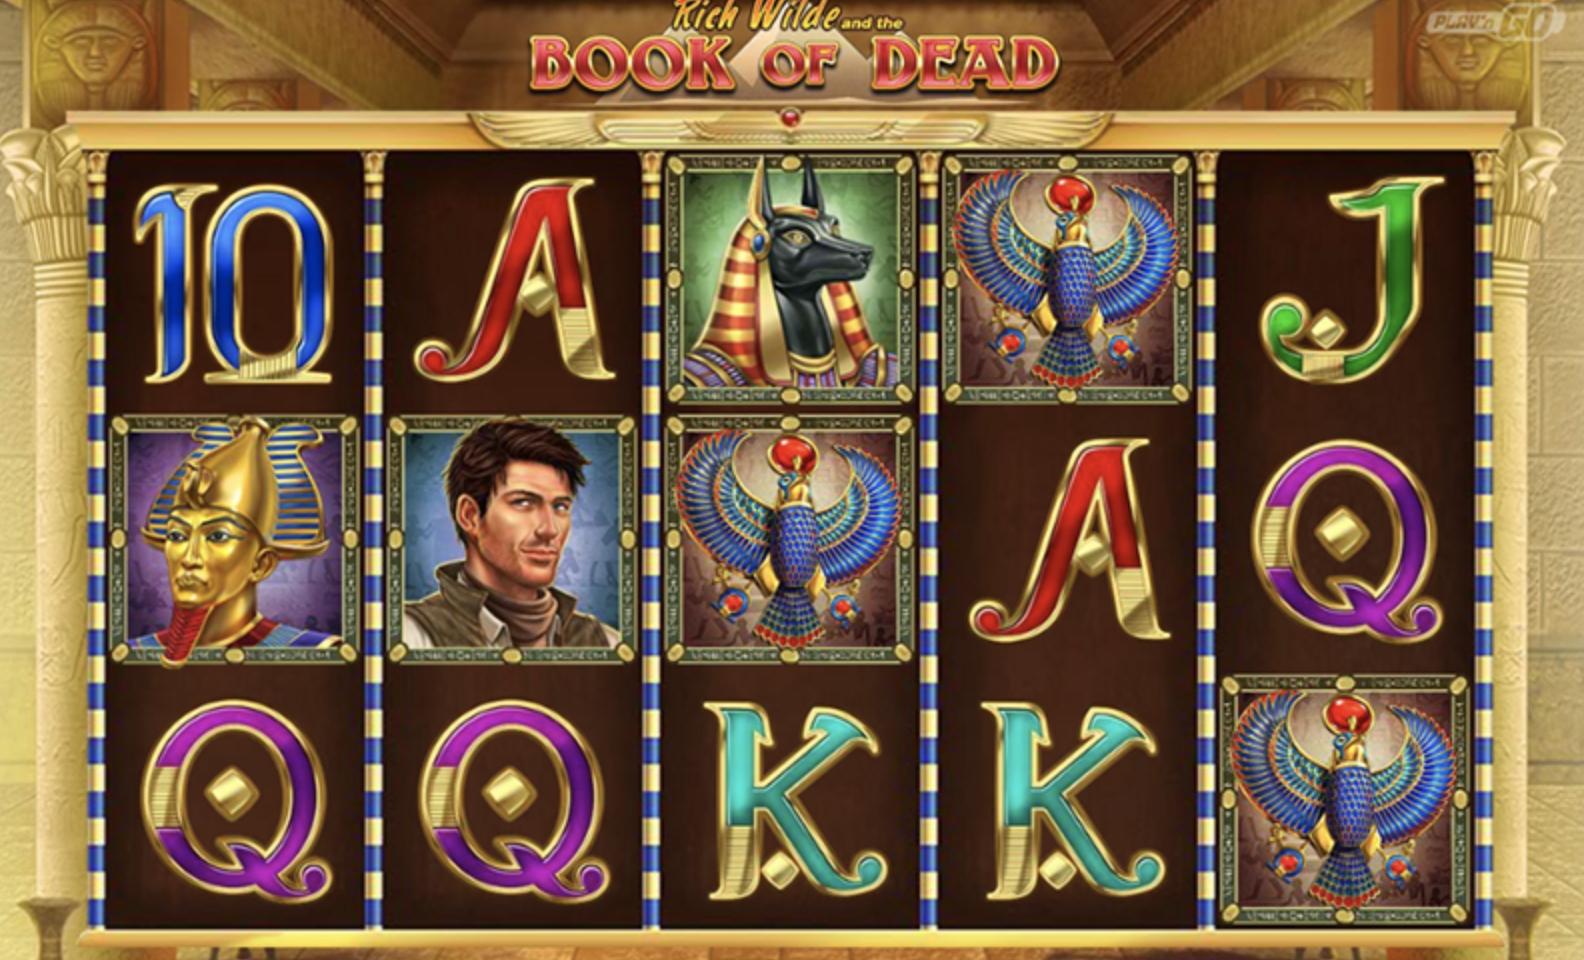 Book of Dead bitcoin slot machine